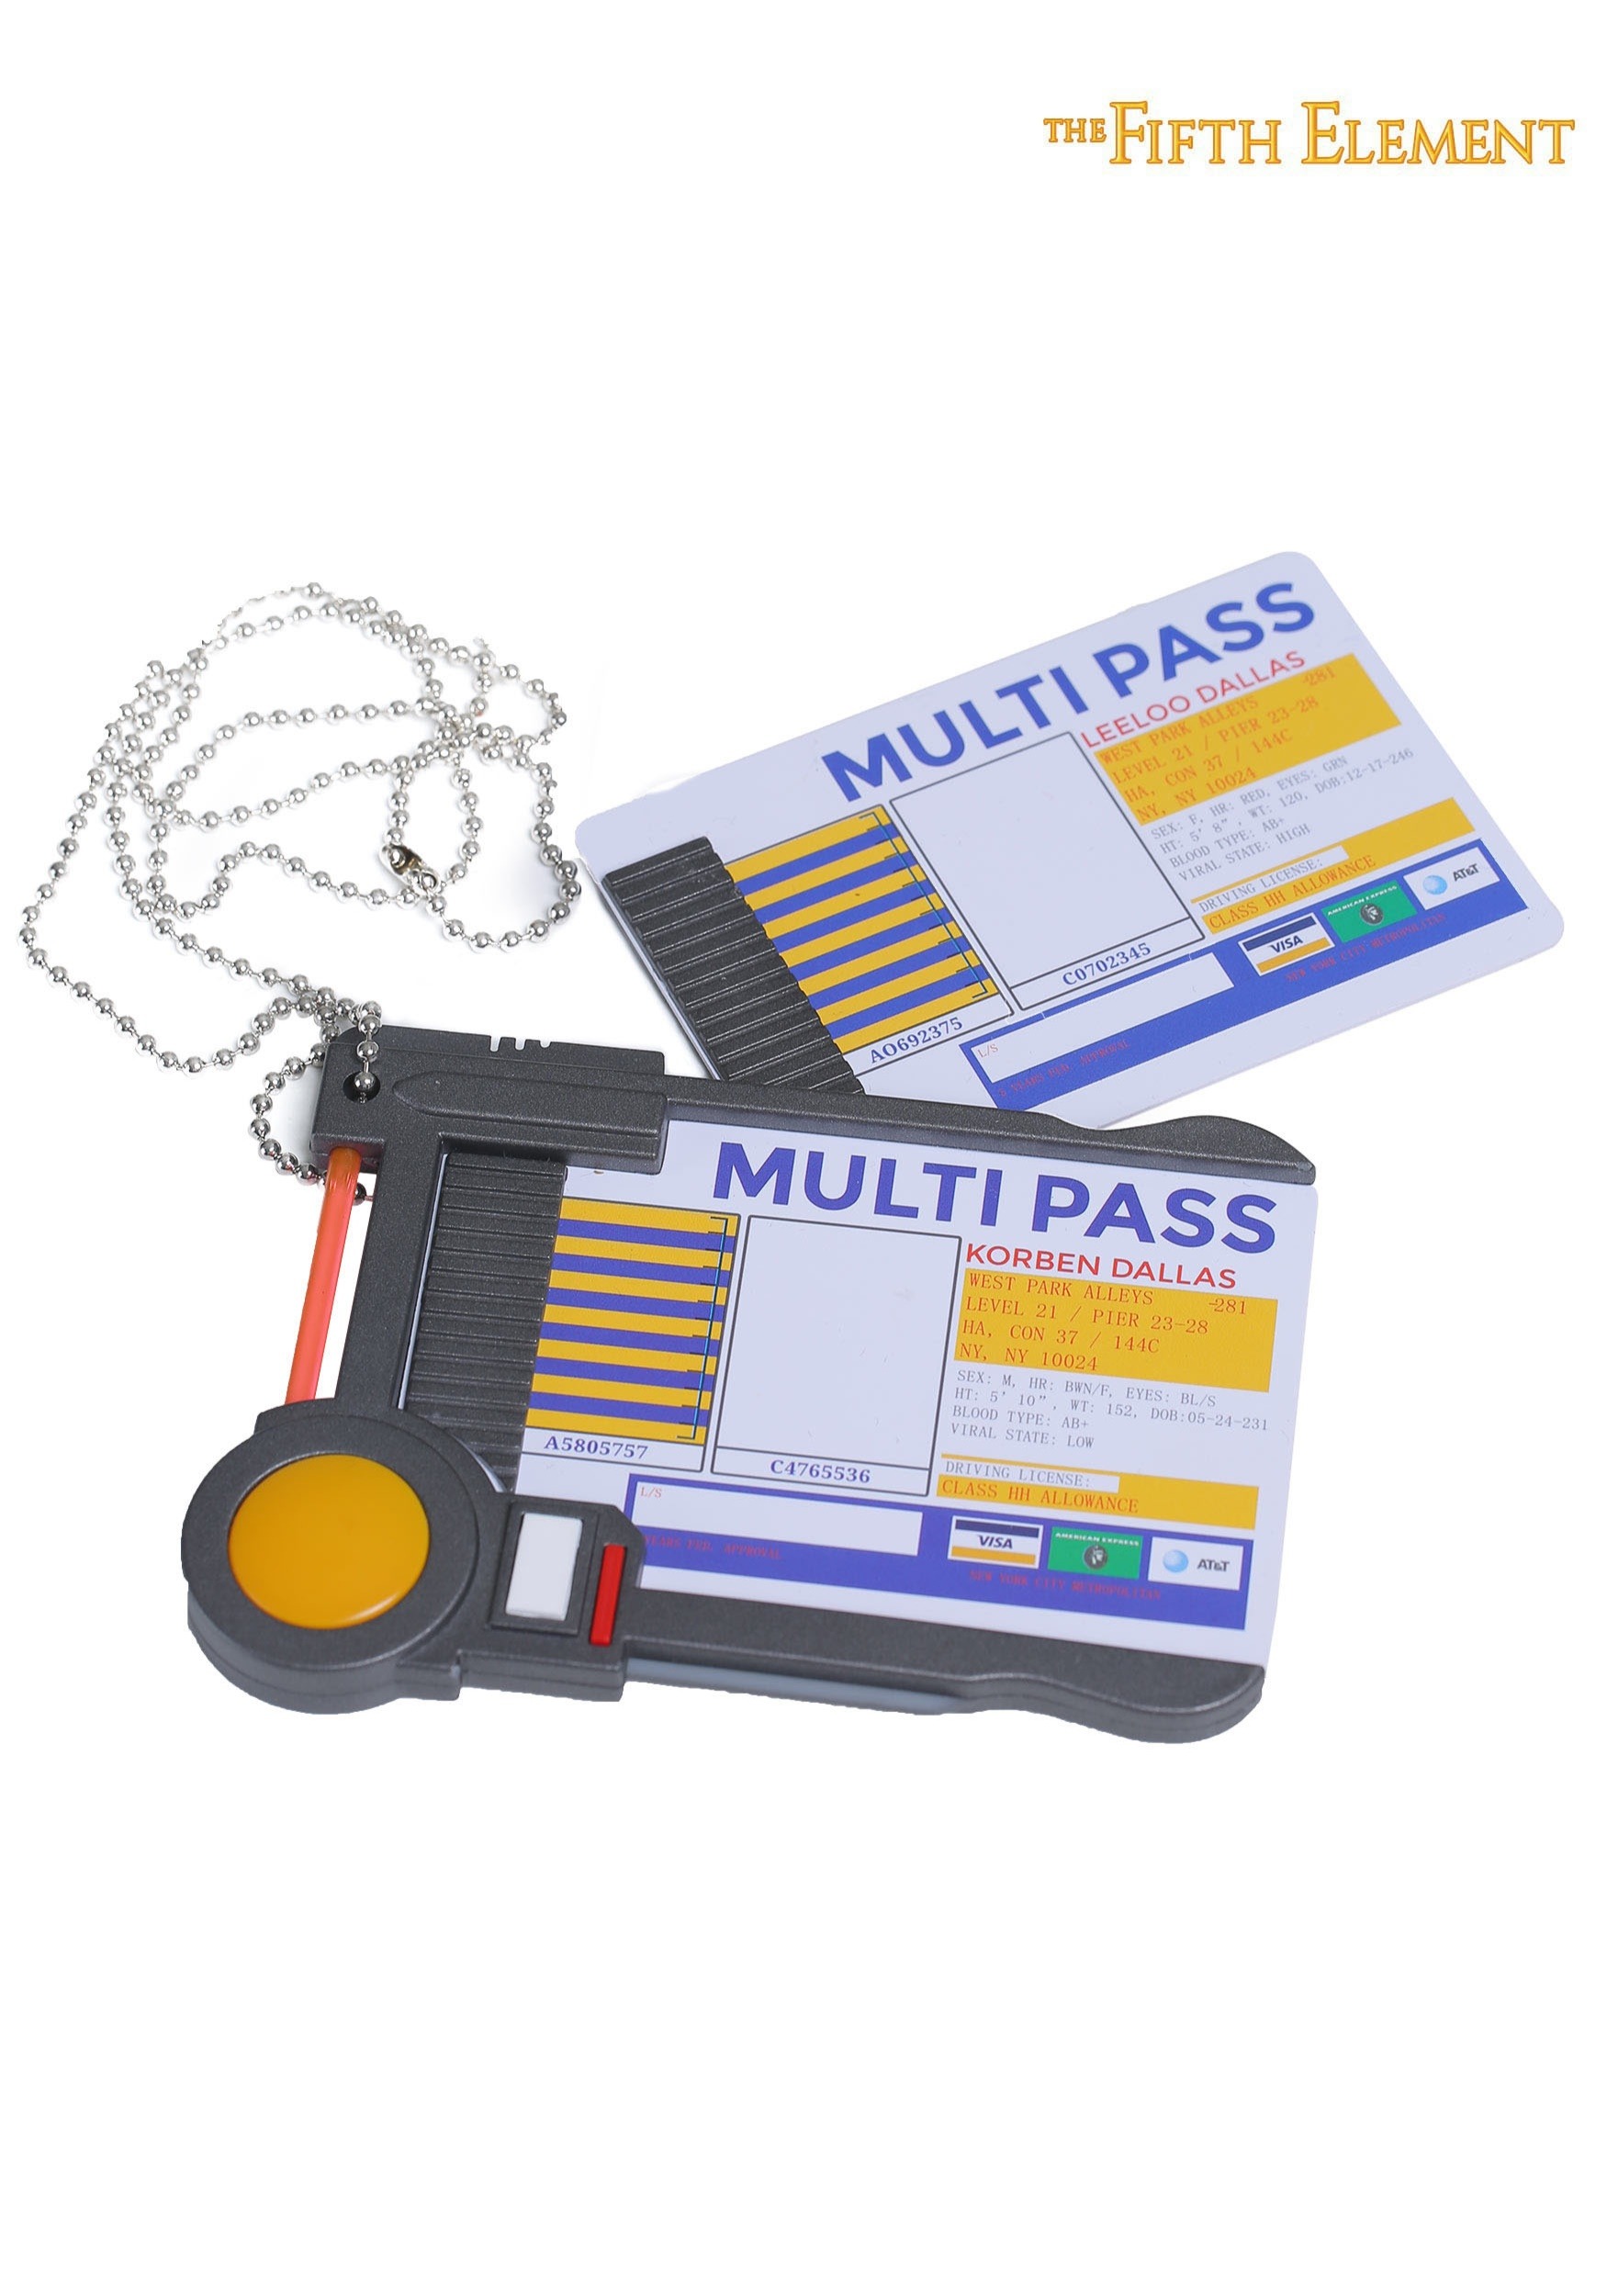 Fifth Element Corbin Dallas Multipass Badge 